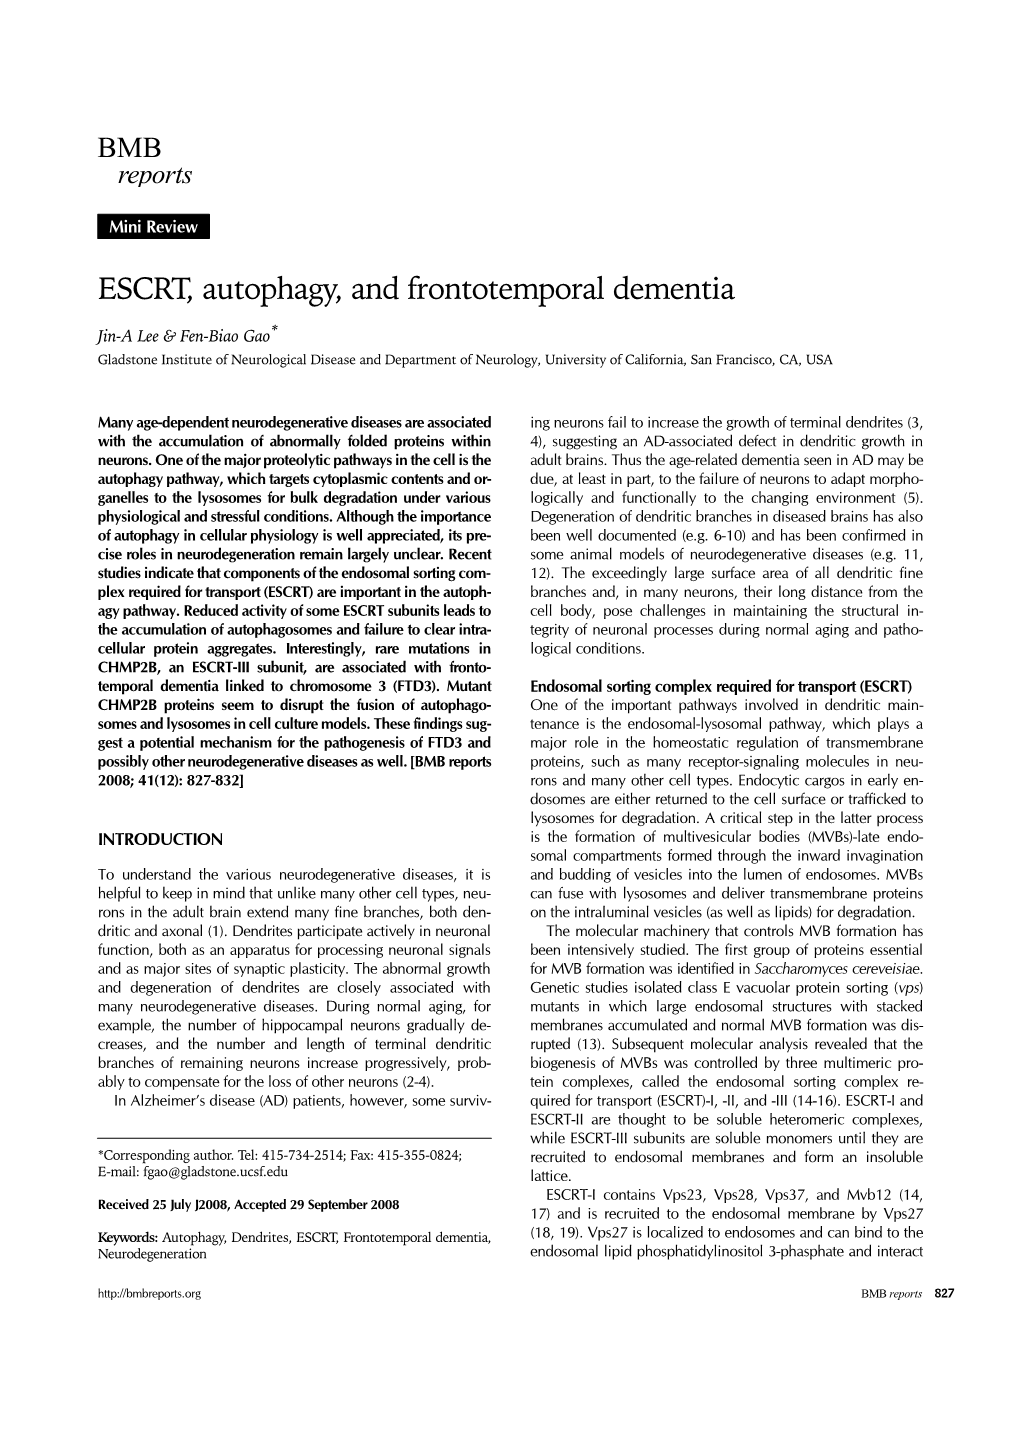 ESCRT, Autophagy, and Frontotemporal Dementia